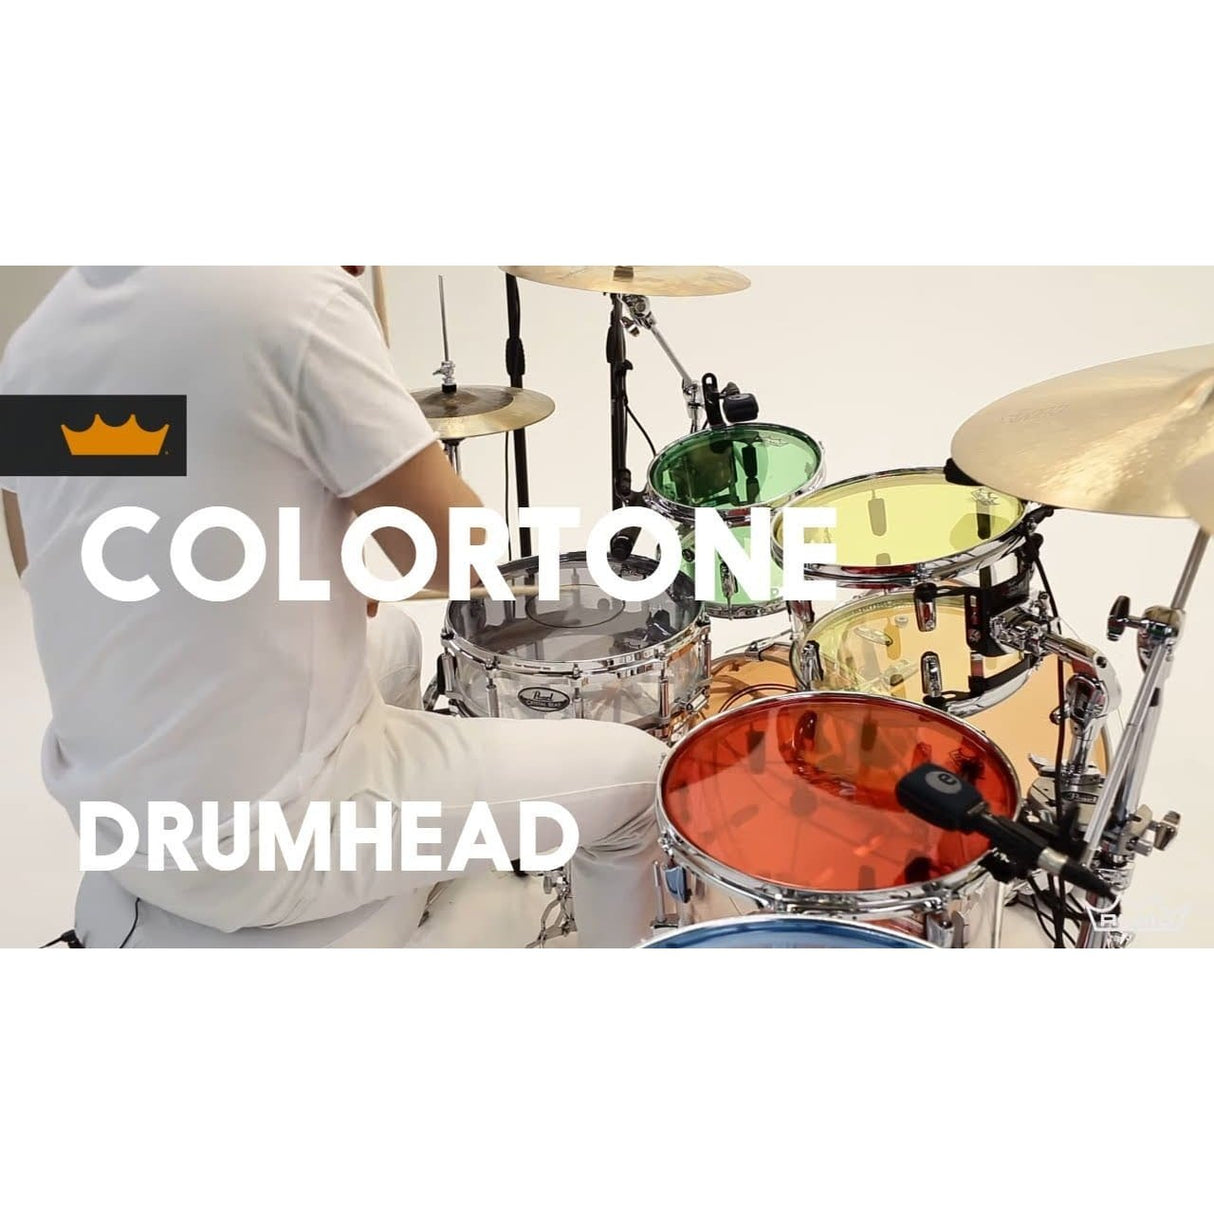 Remo Emperor Colortone Blue 8 Inch Drum Head